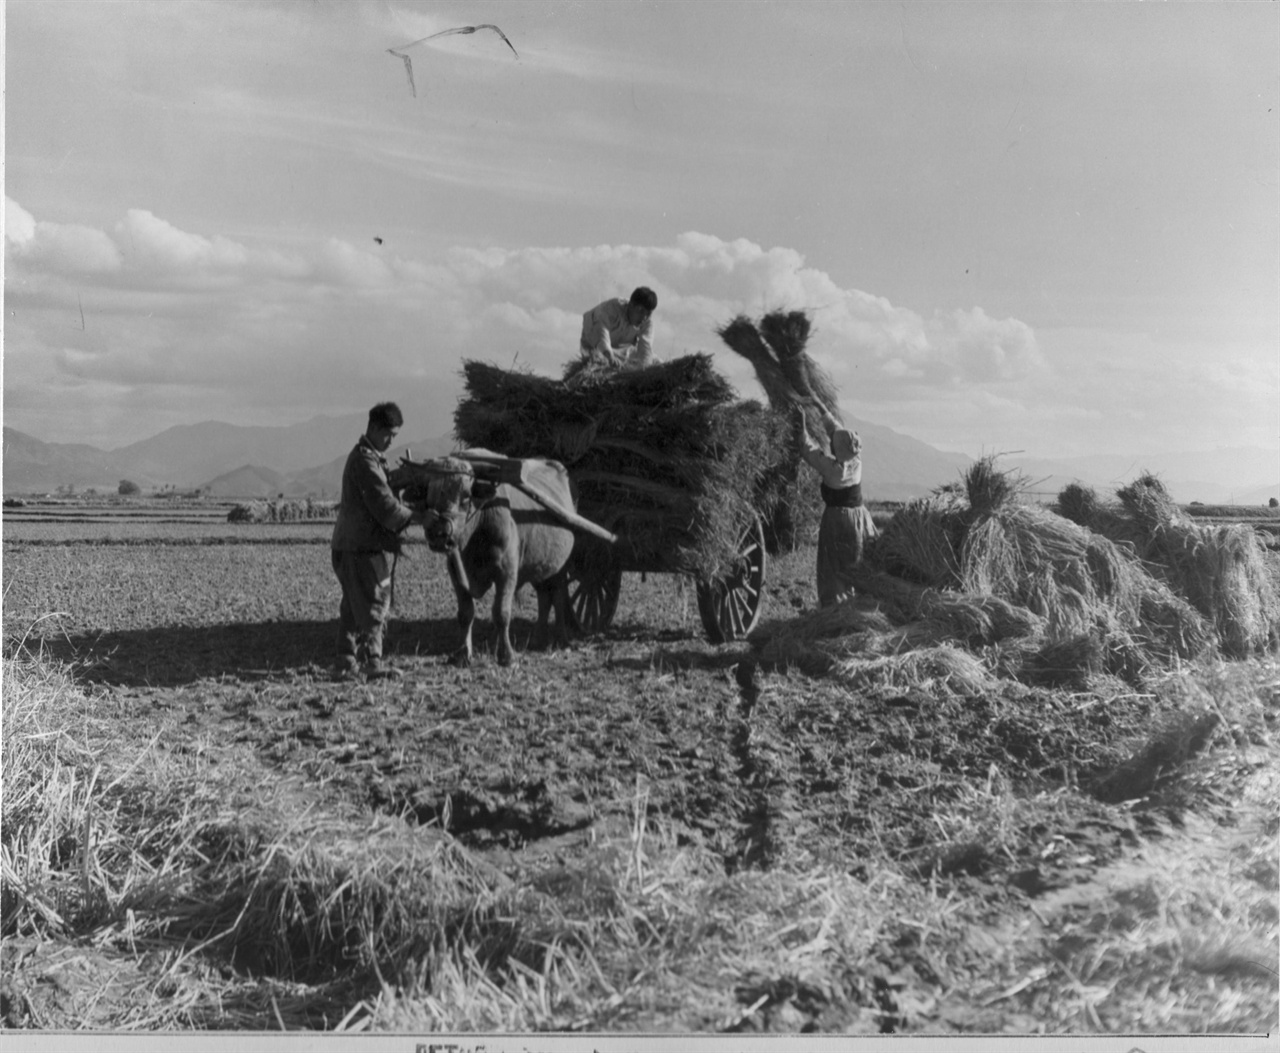 1950. 11. 8. 원산, 소달구지에 볏단을 싣는 농사꾼들.